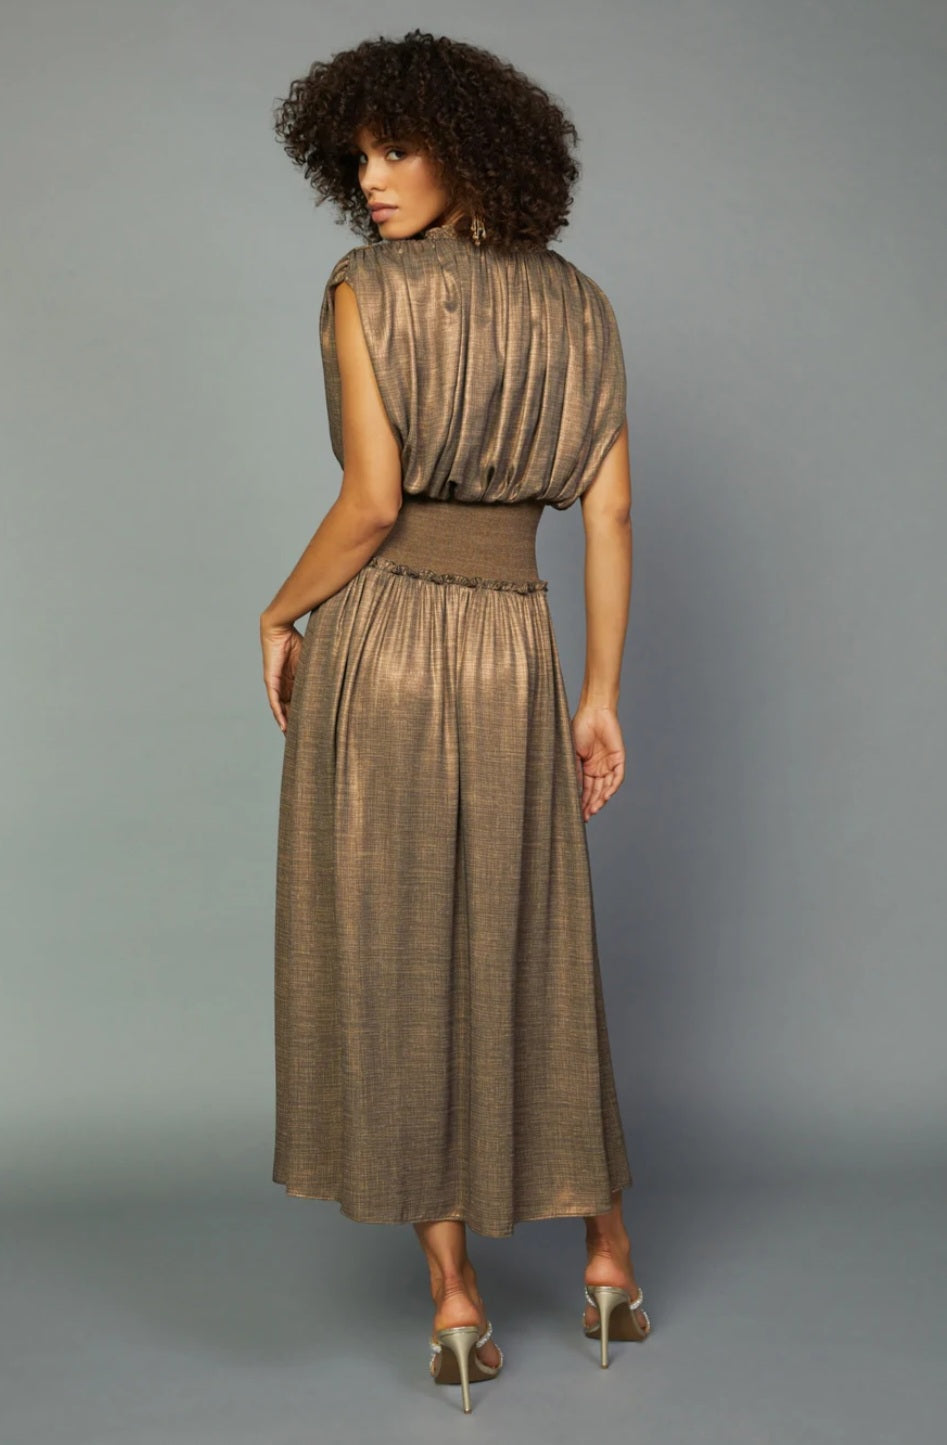 Bronze Goddess Dress - The Flaunt